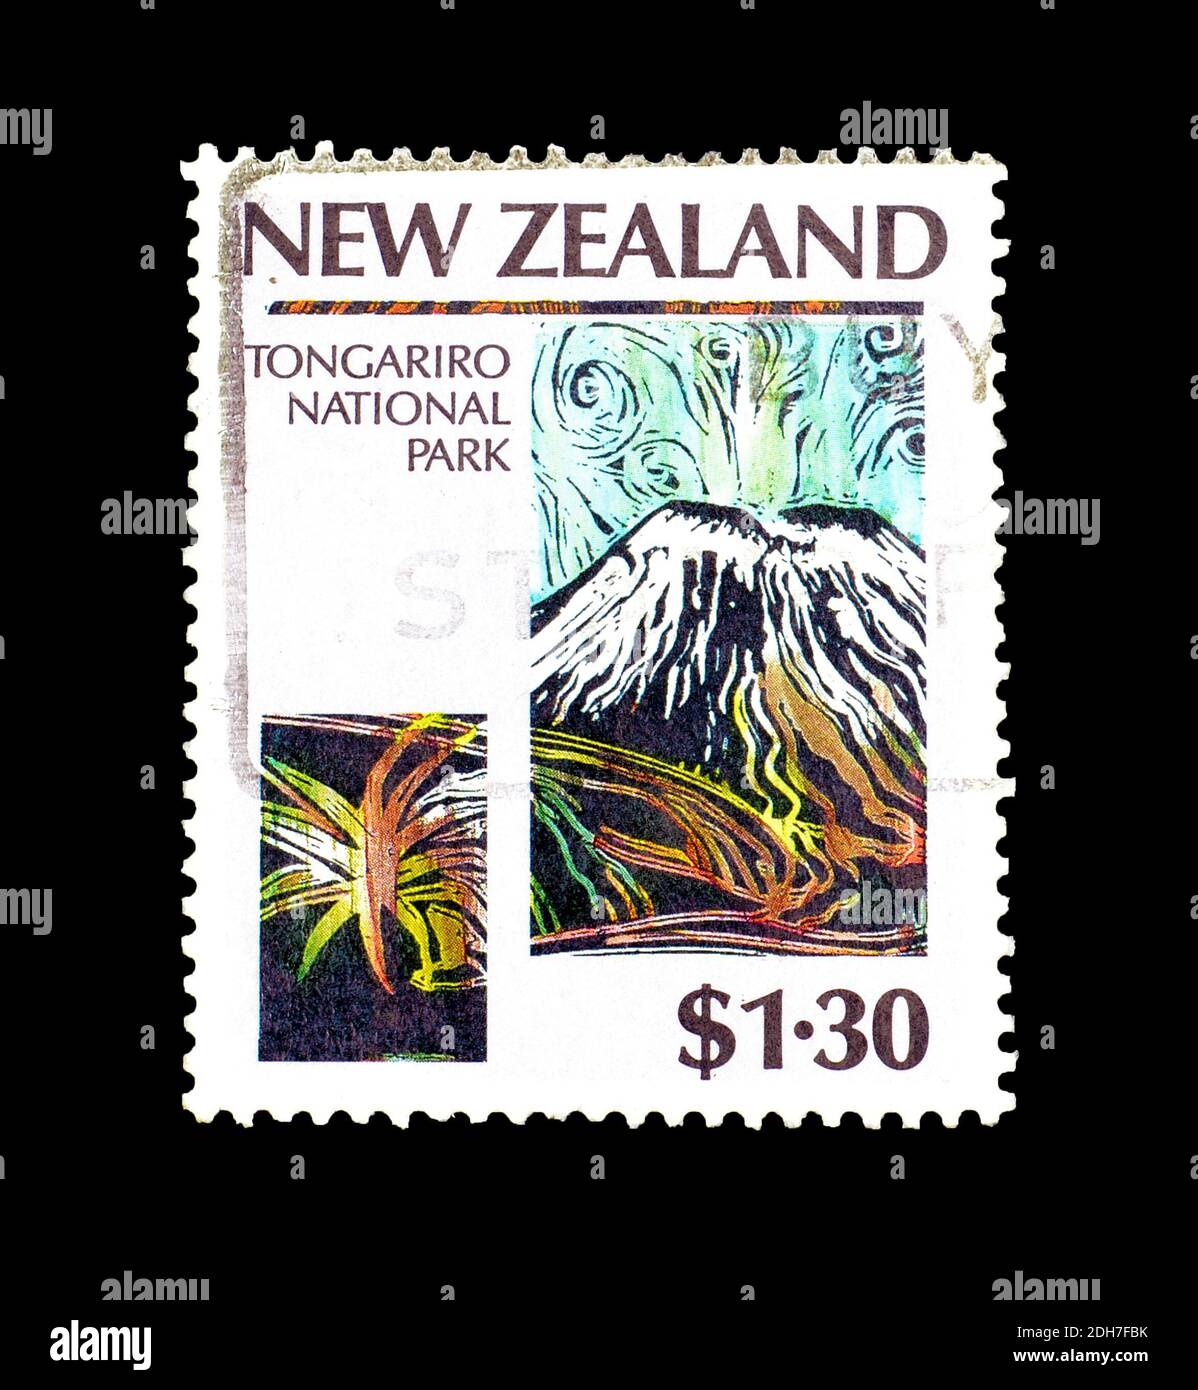 Timbre-poste annulé imprimé par la Nouvelle-Zélande, qui montre le parc national de Tongariro, vers 1987. Banque D'Images